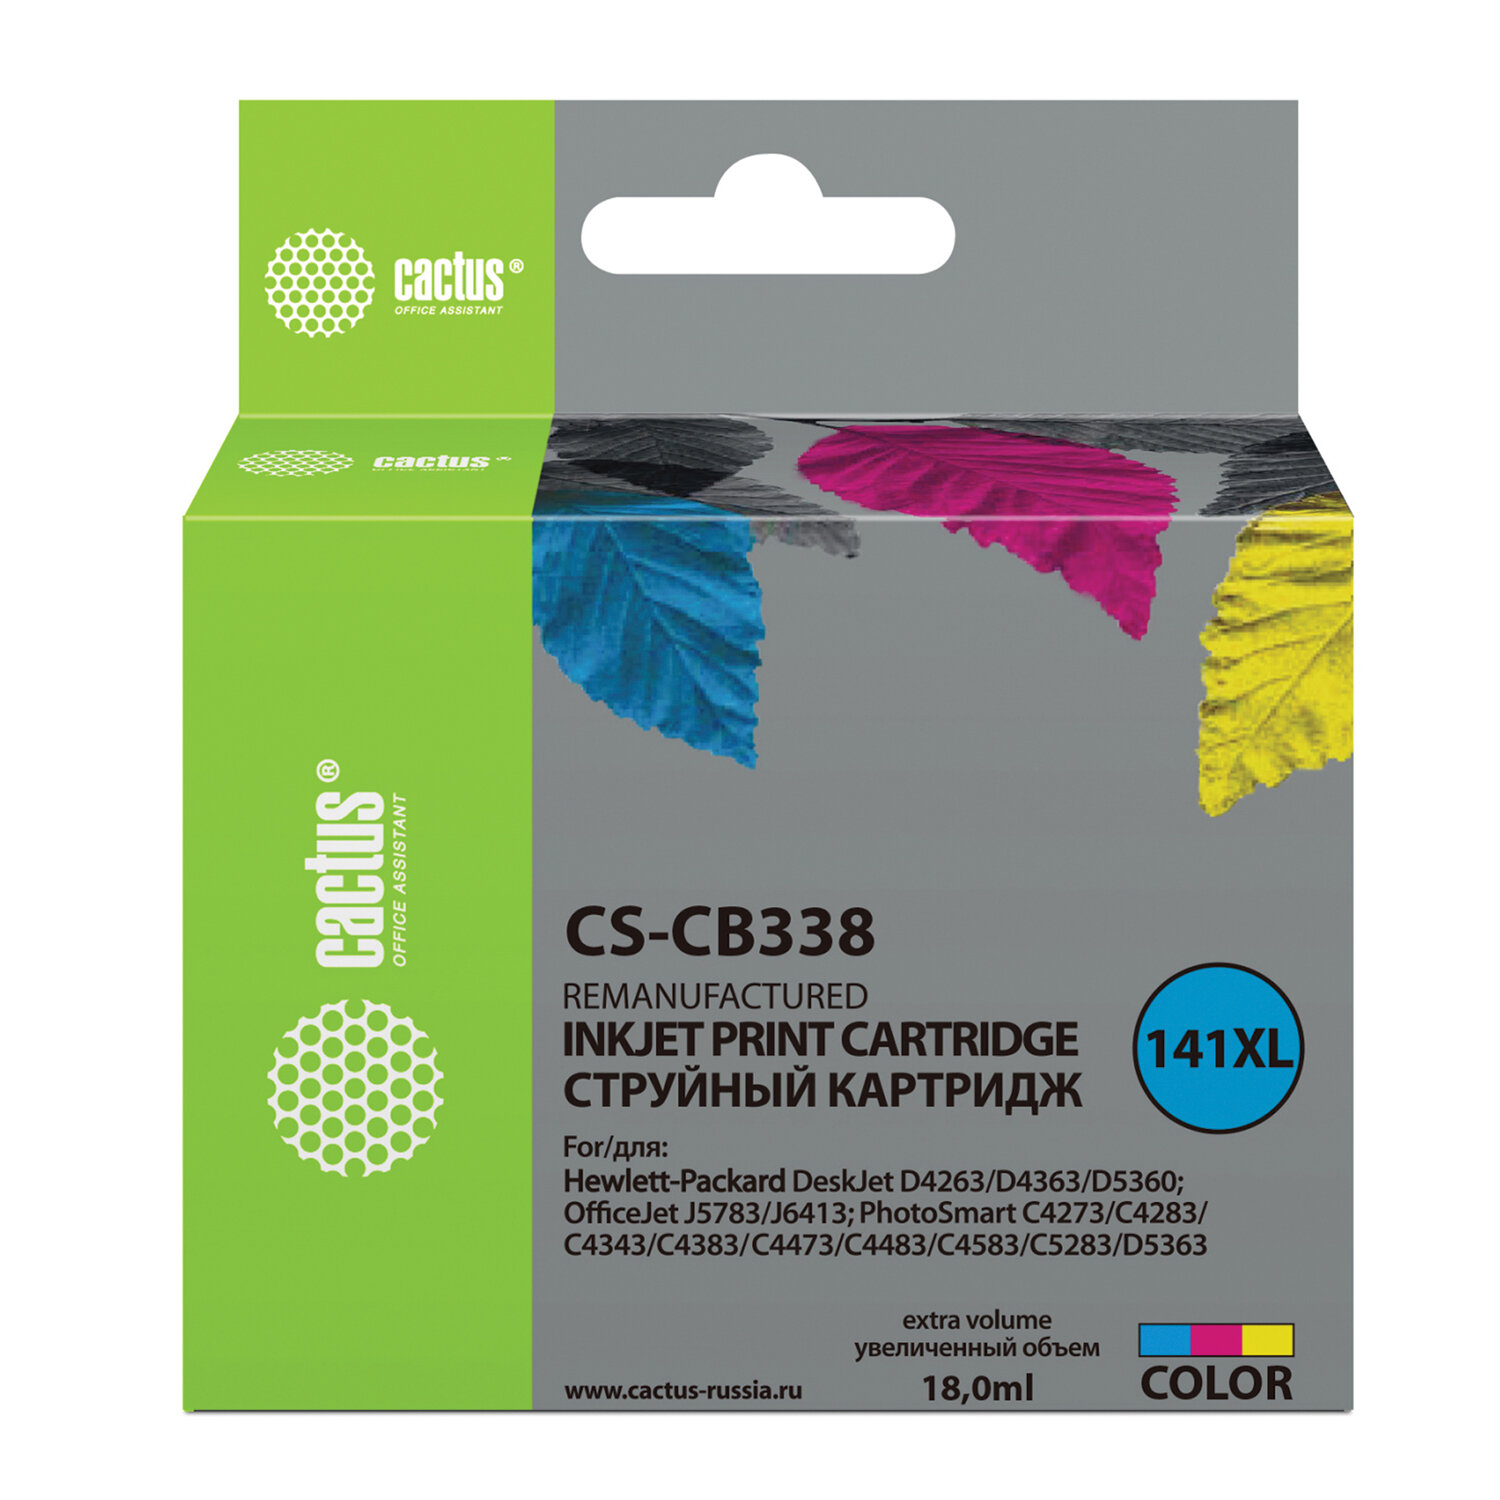  CACTUS CS-CB338